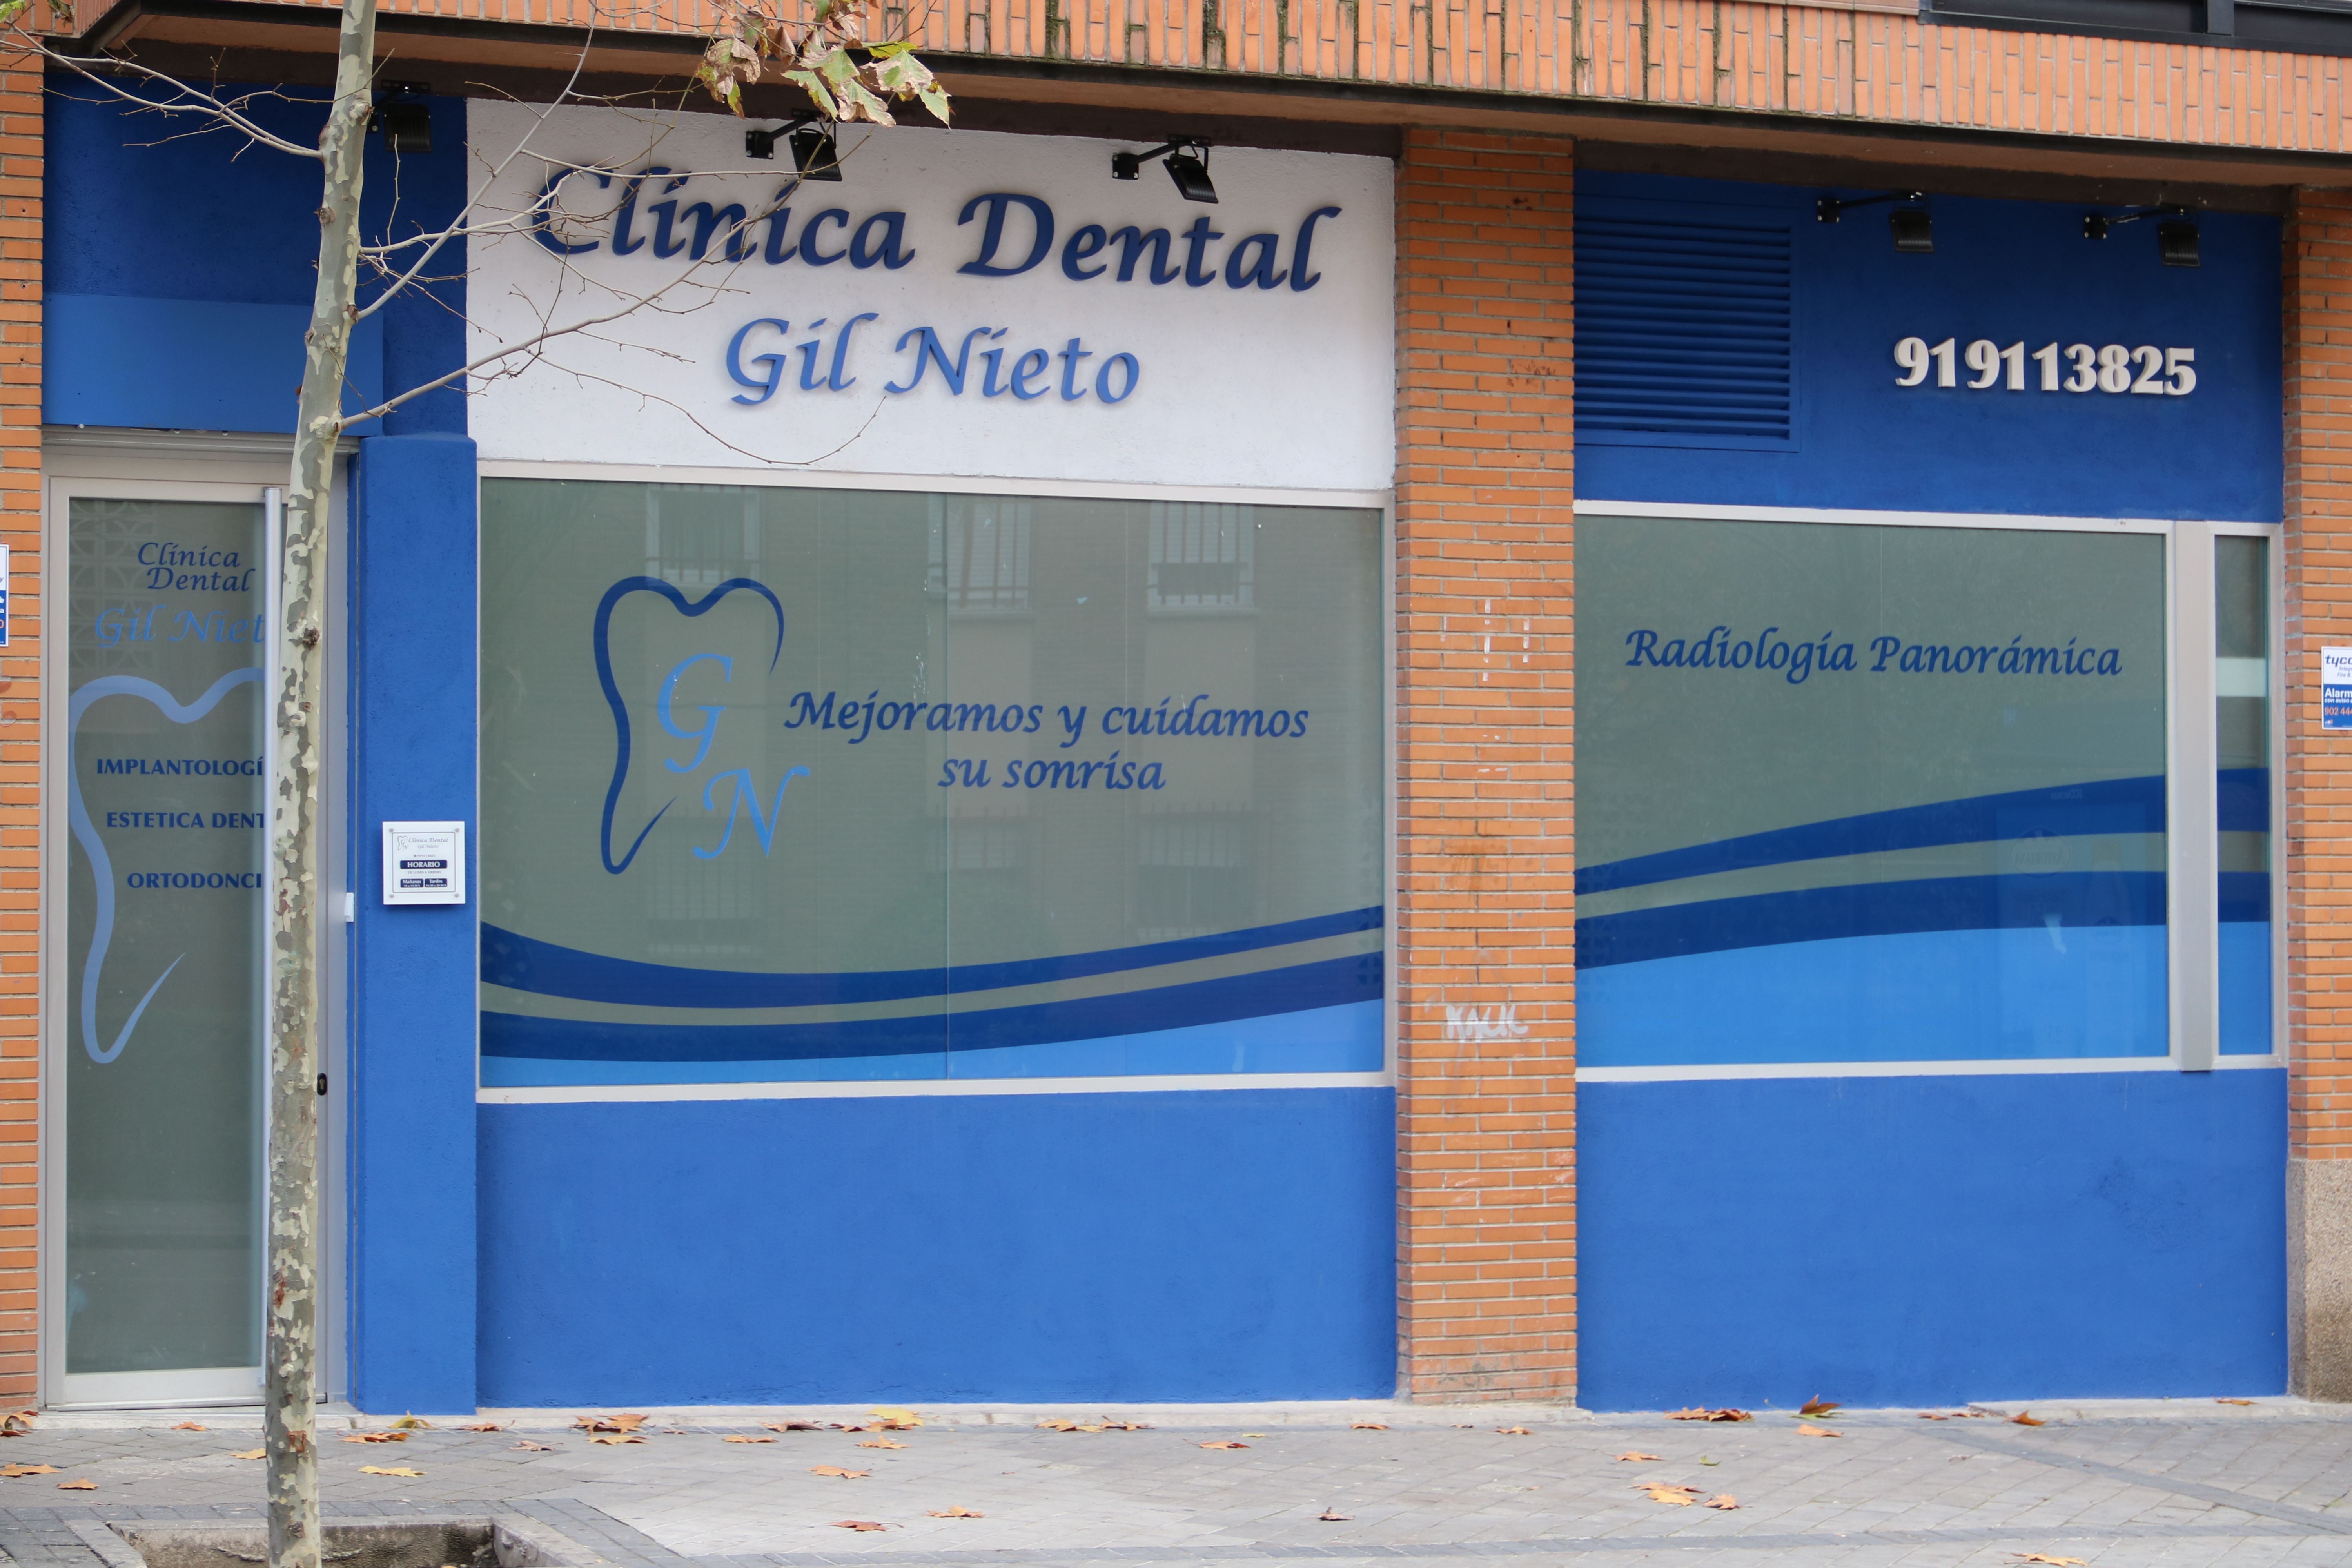 Clínica dental Gil Nieto Villa de Vallecas